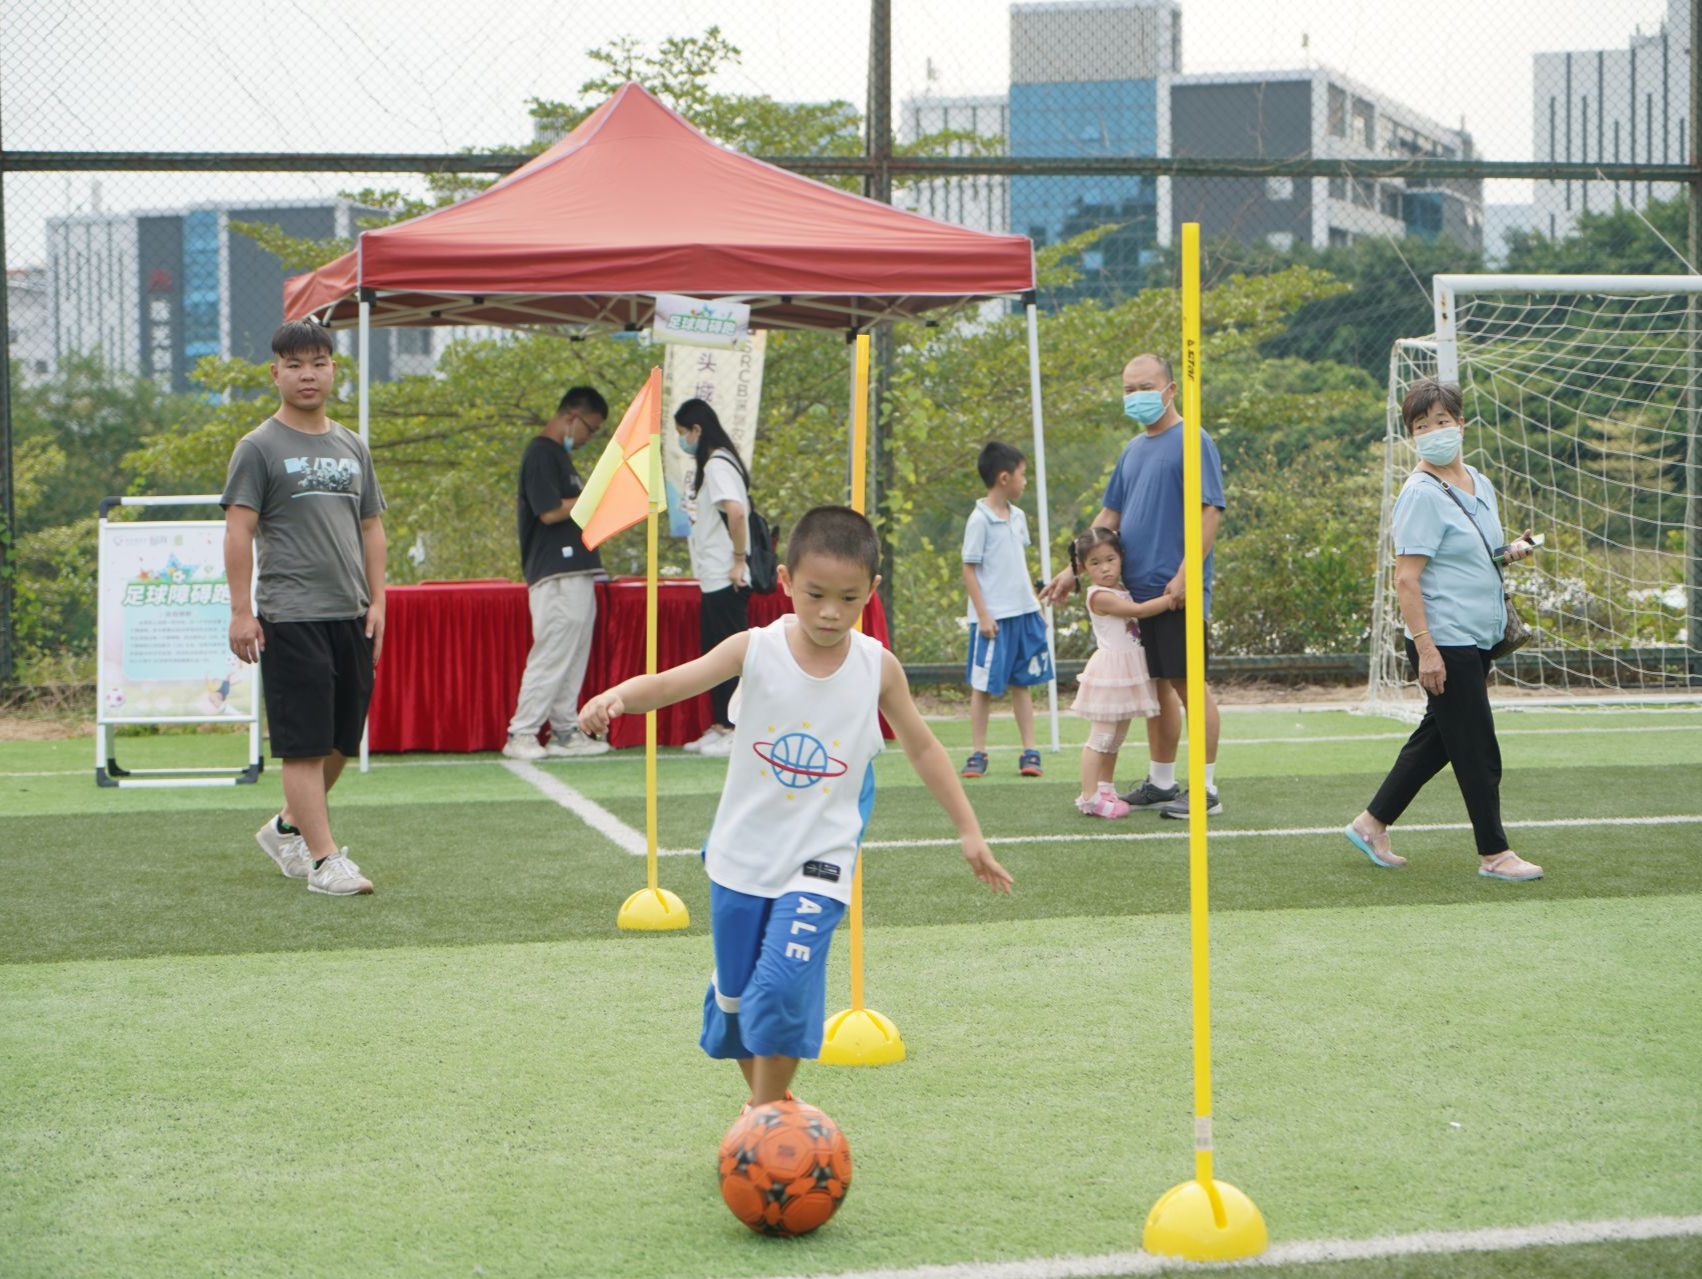 南山区珠光社区举行足球嘉年华活动